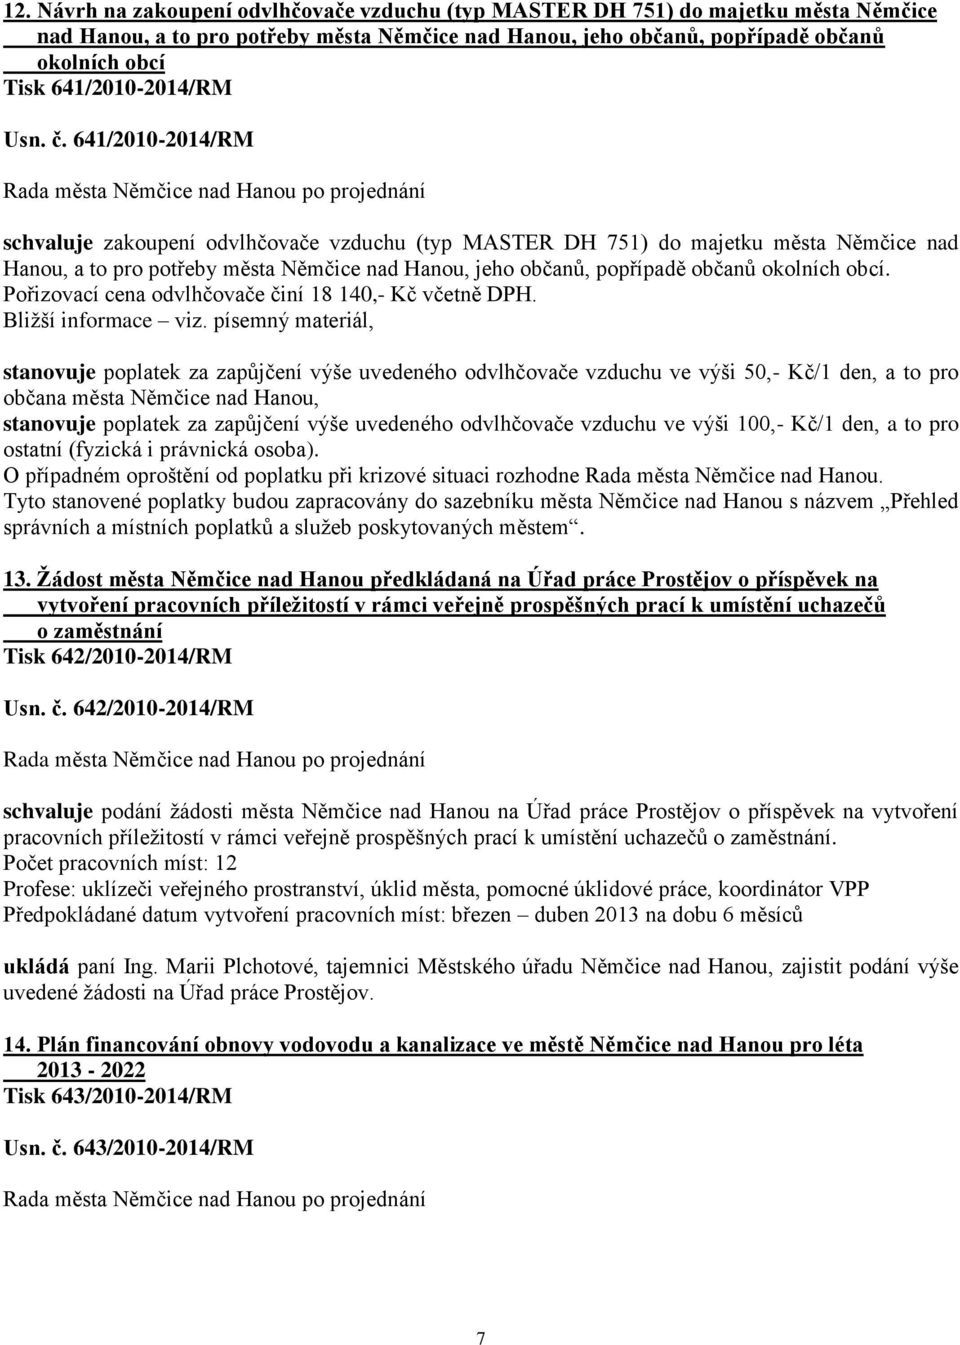 641/2010-2014/RM schvaluje zakoupení odvlhčovače vzduchu (typ MASTER DH 751) do majetku města Němčice nad Hanou, a to pro potřeby města Němčice nad Hanou, jeho občanů, popřípadě občanů okolních obcí.